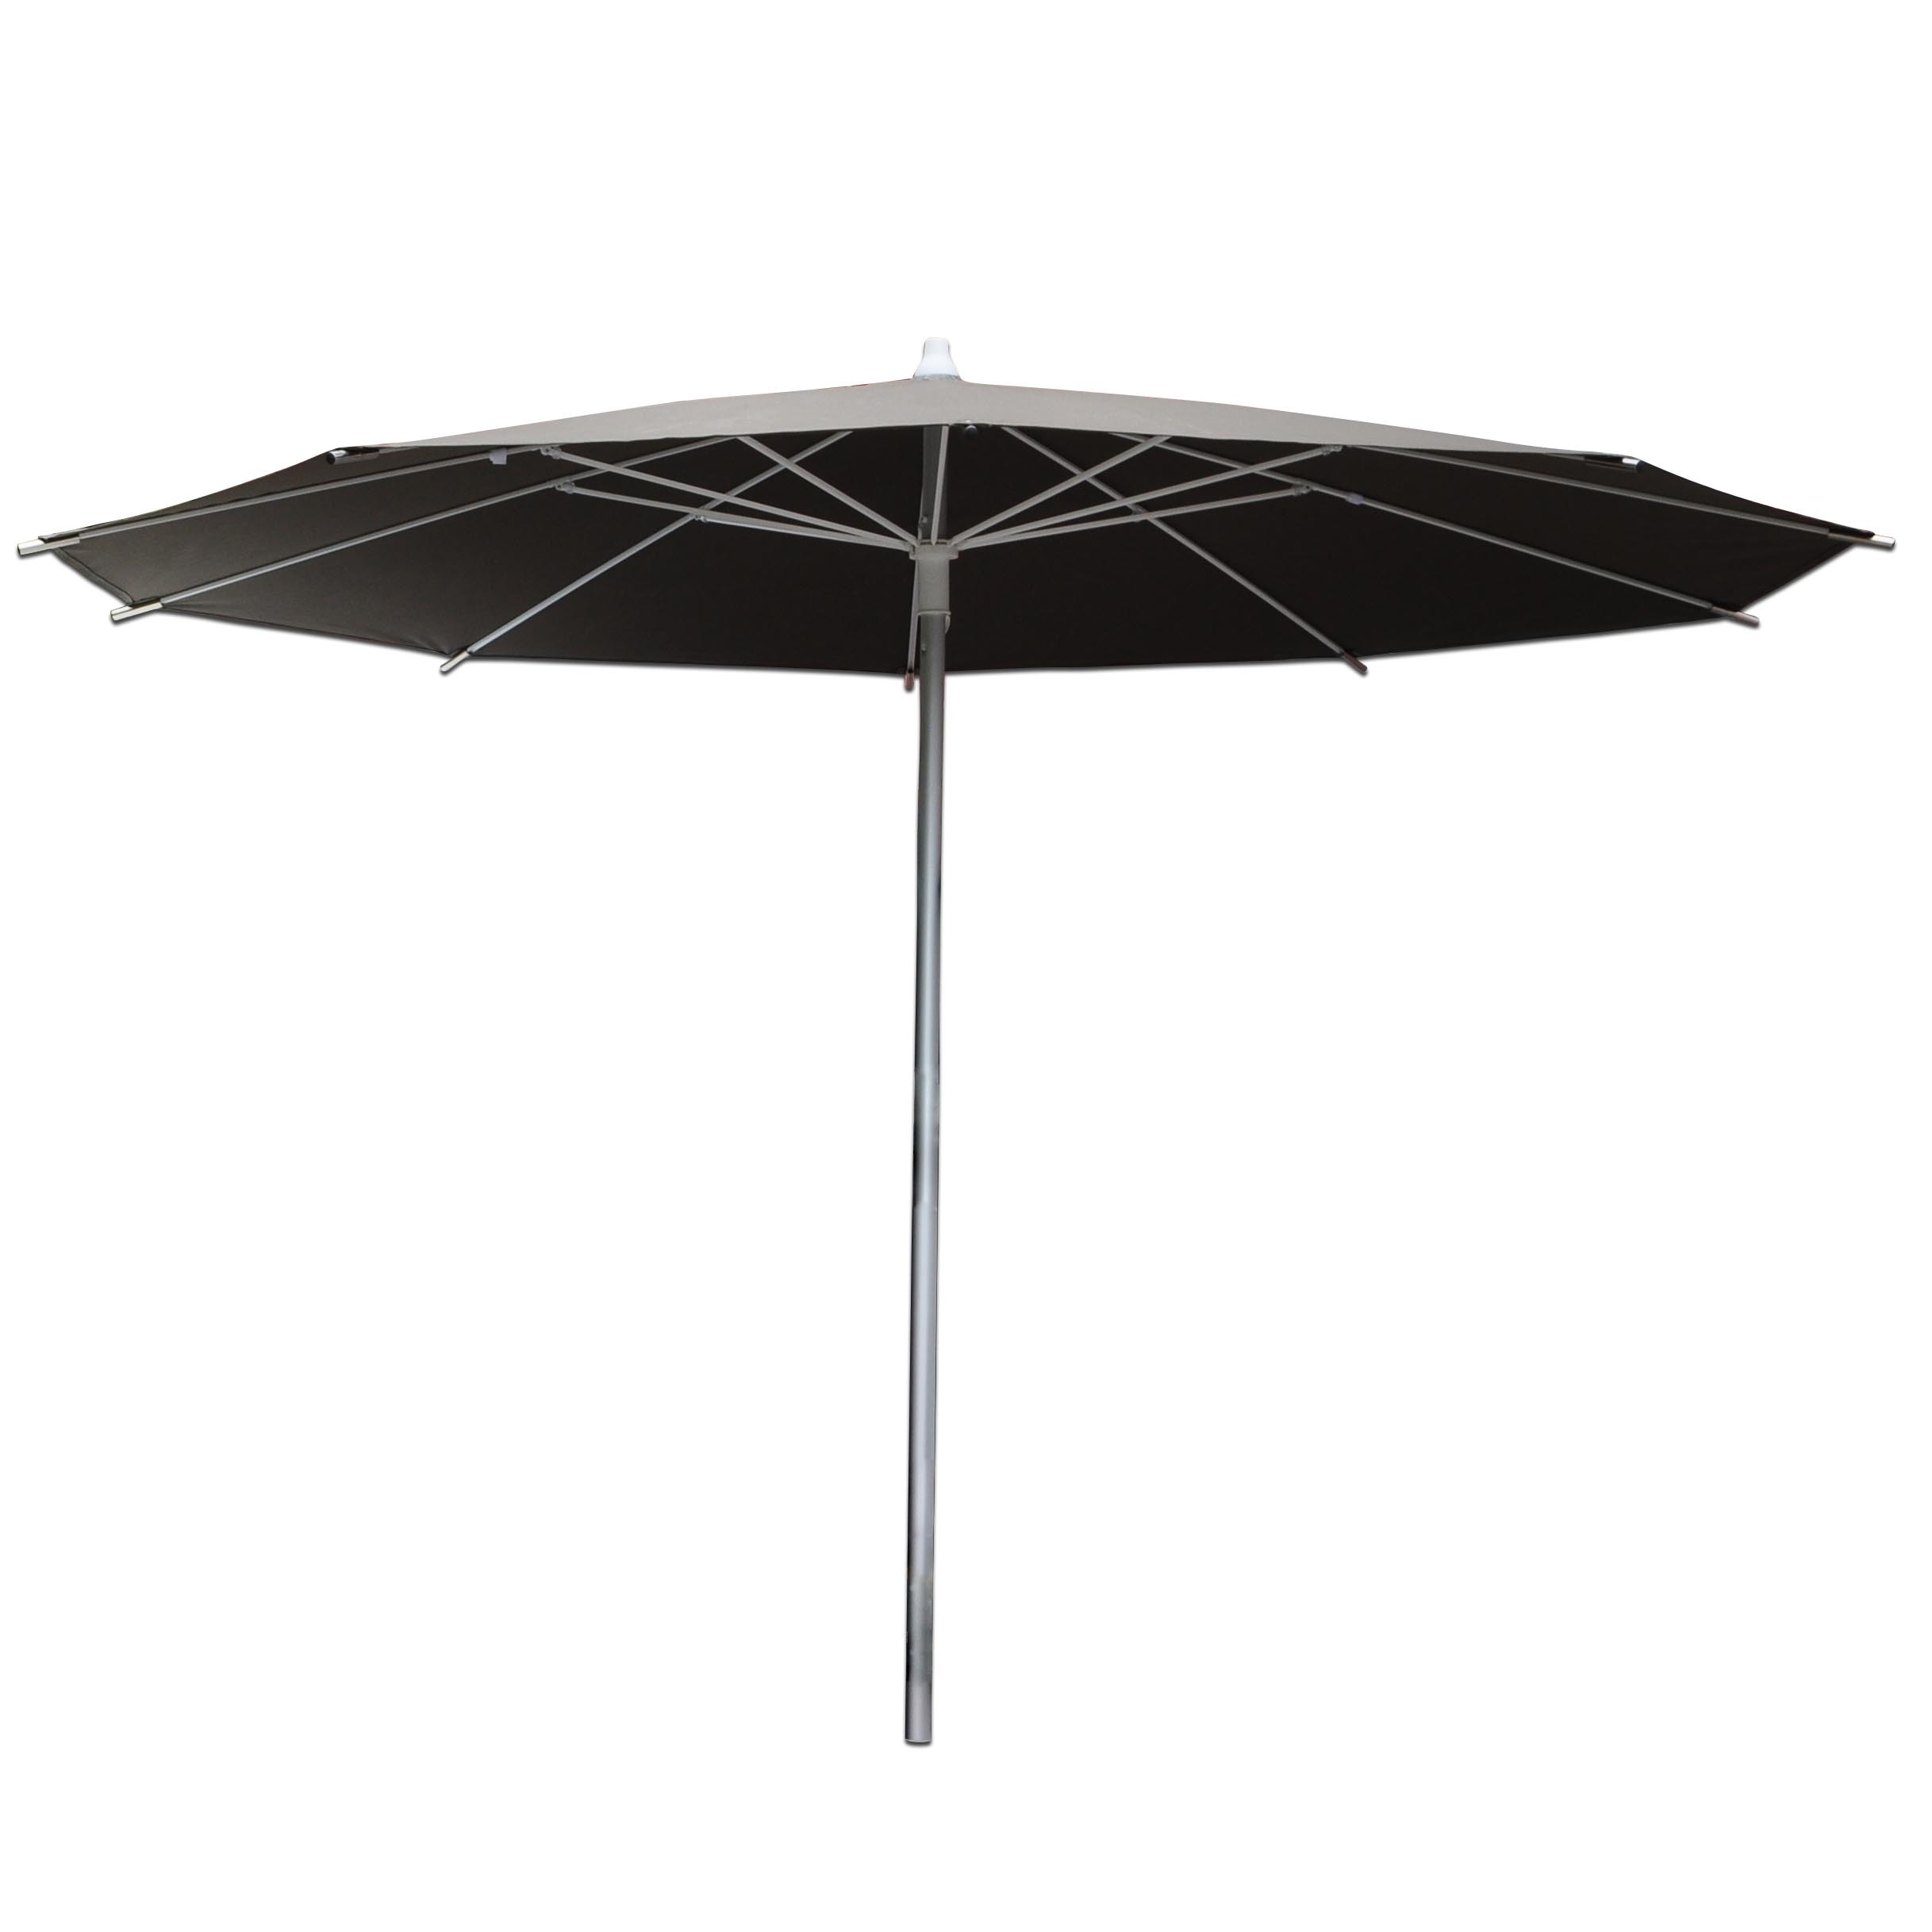 Weather protective umbrella